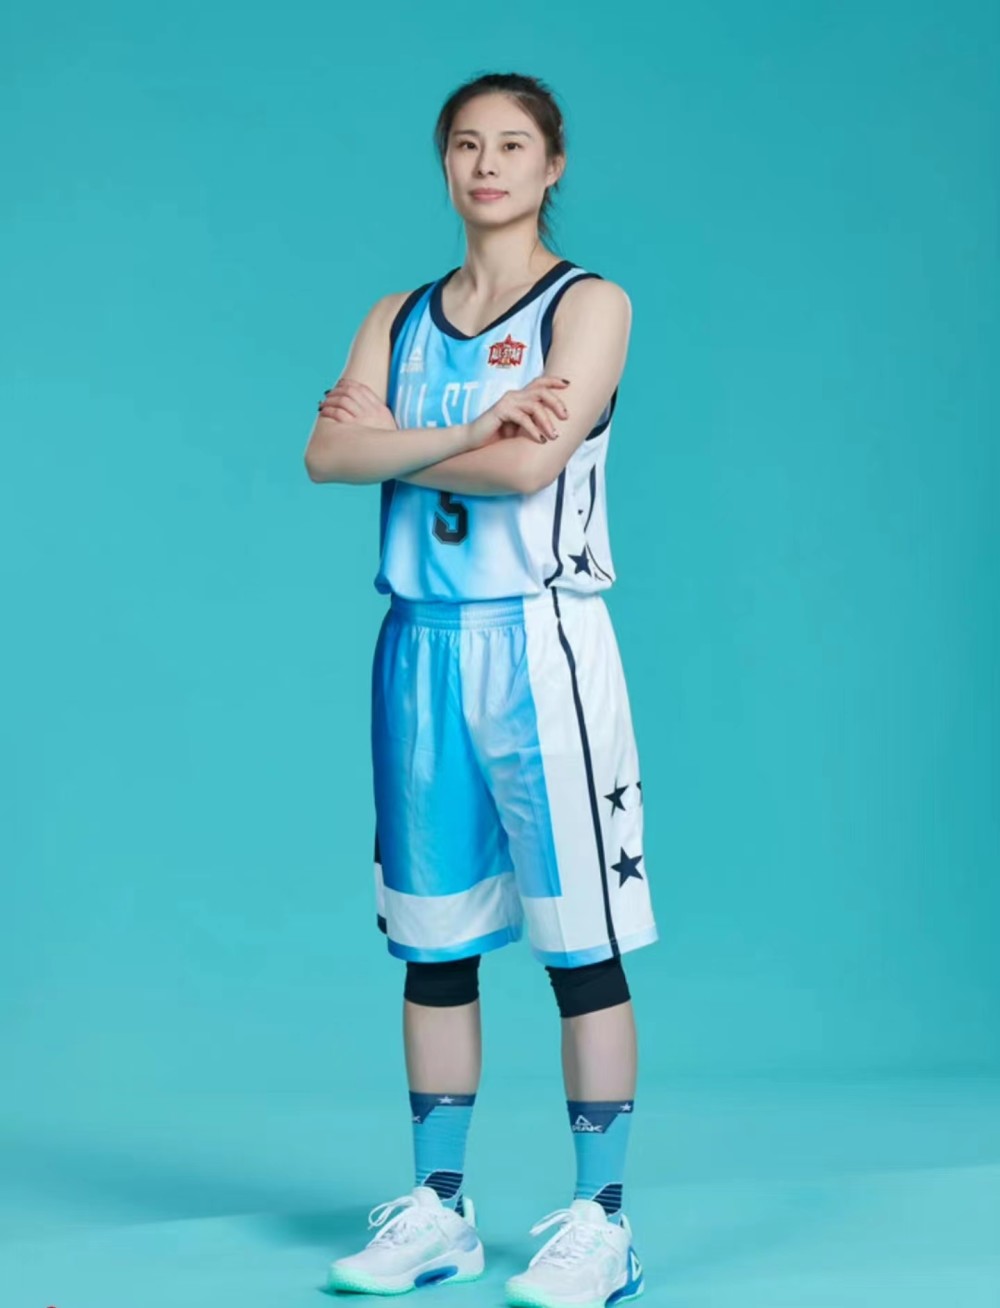 篮球运动员王思雨图片